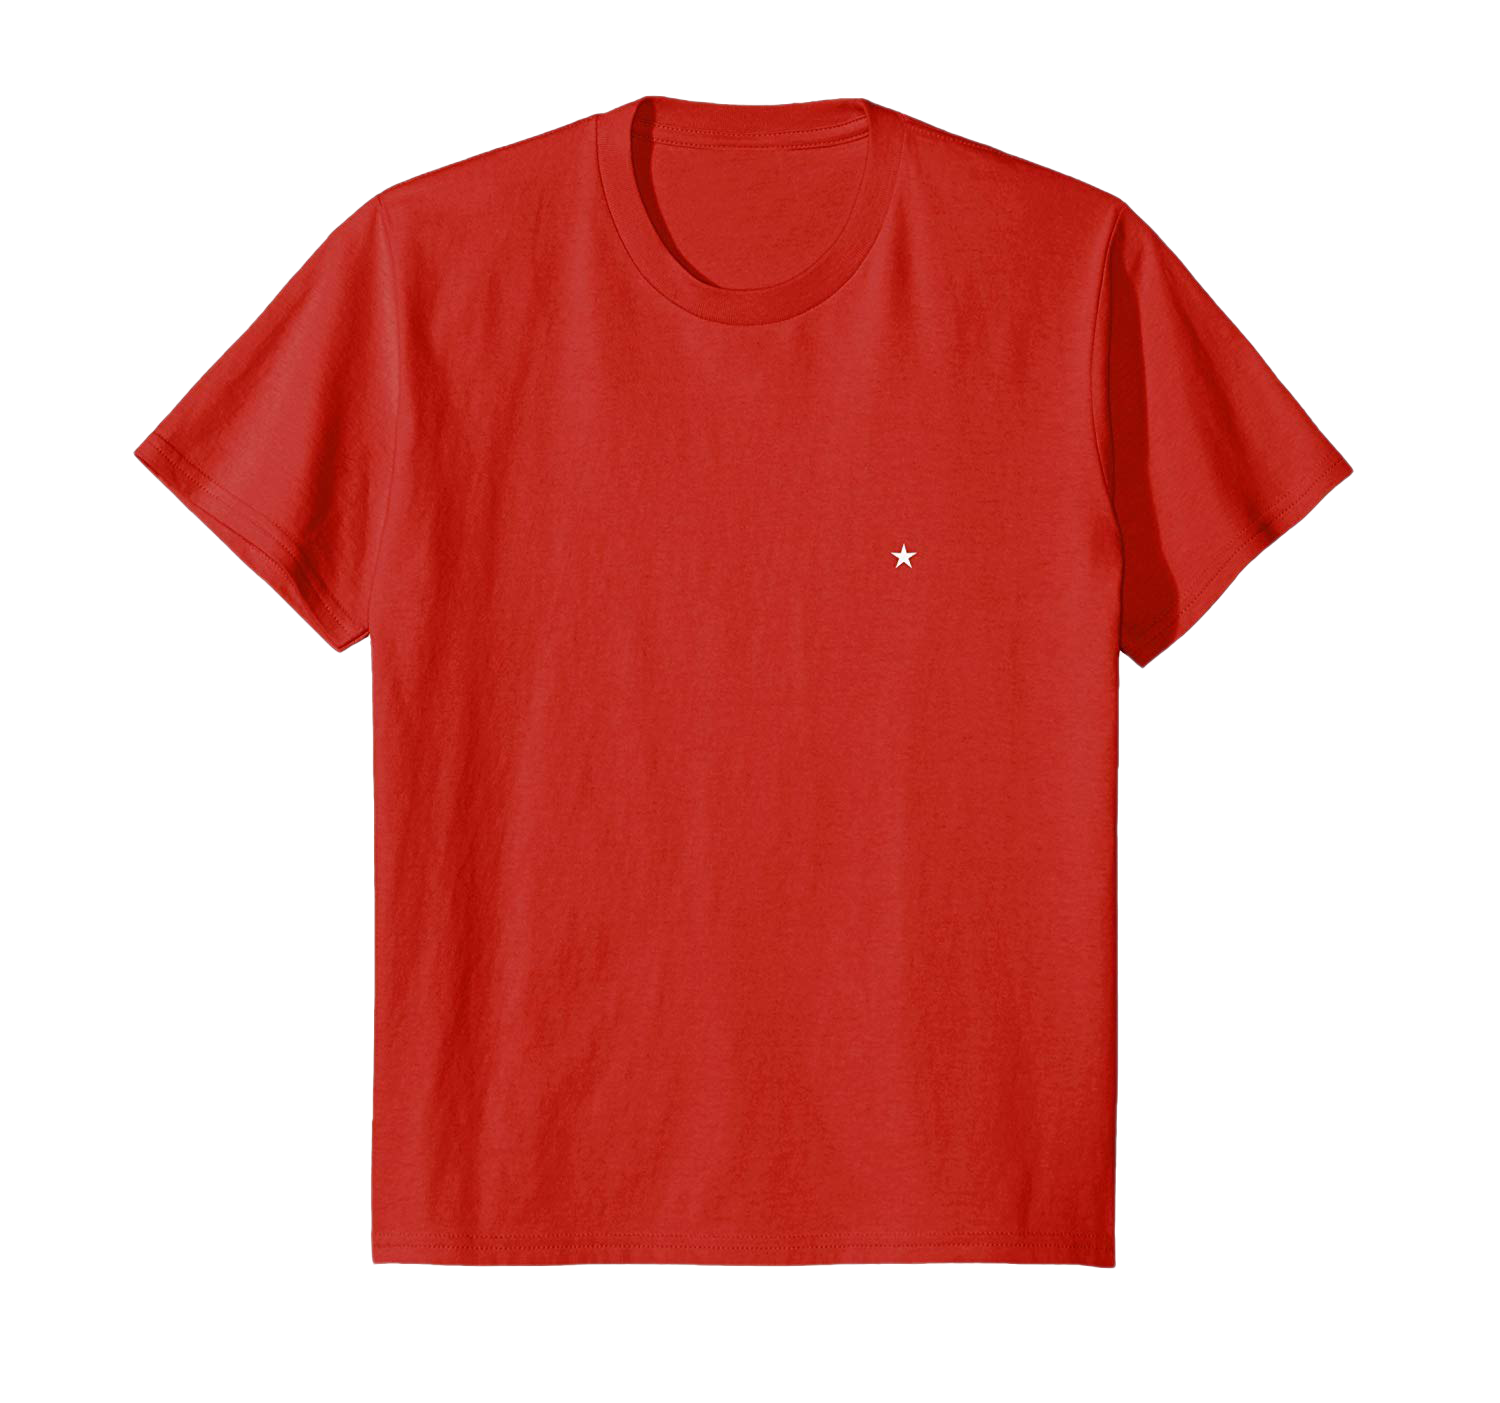 Простая красная футболка PNG высококачественное изображение